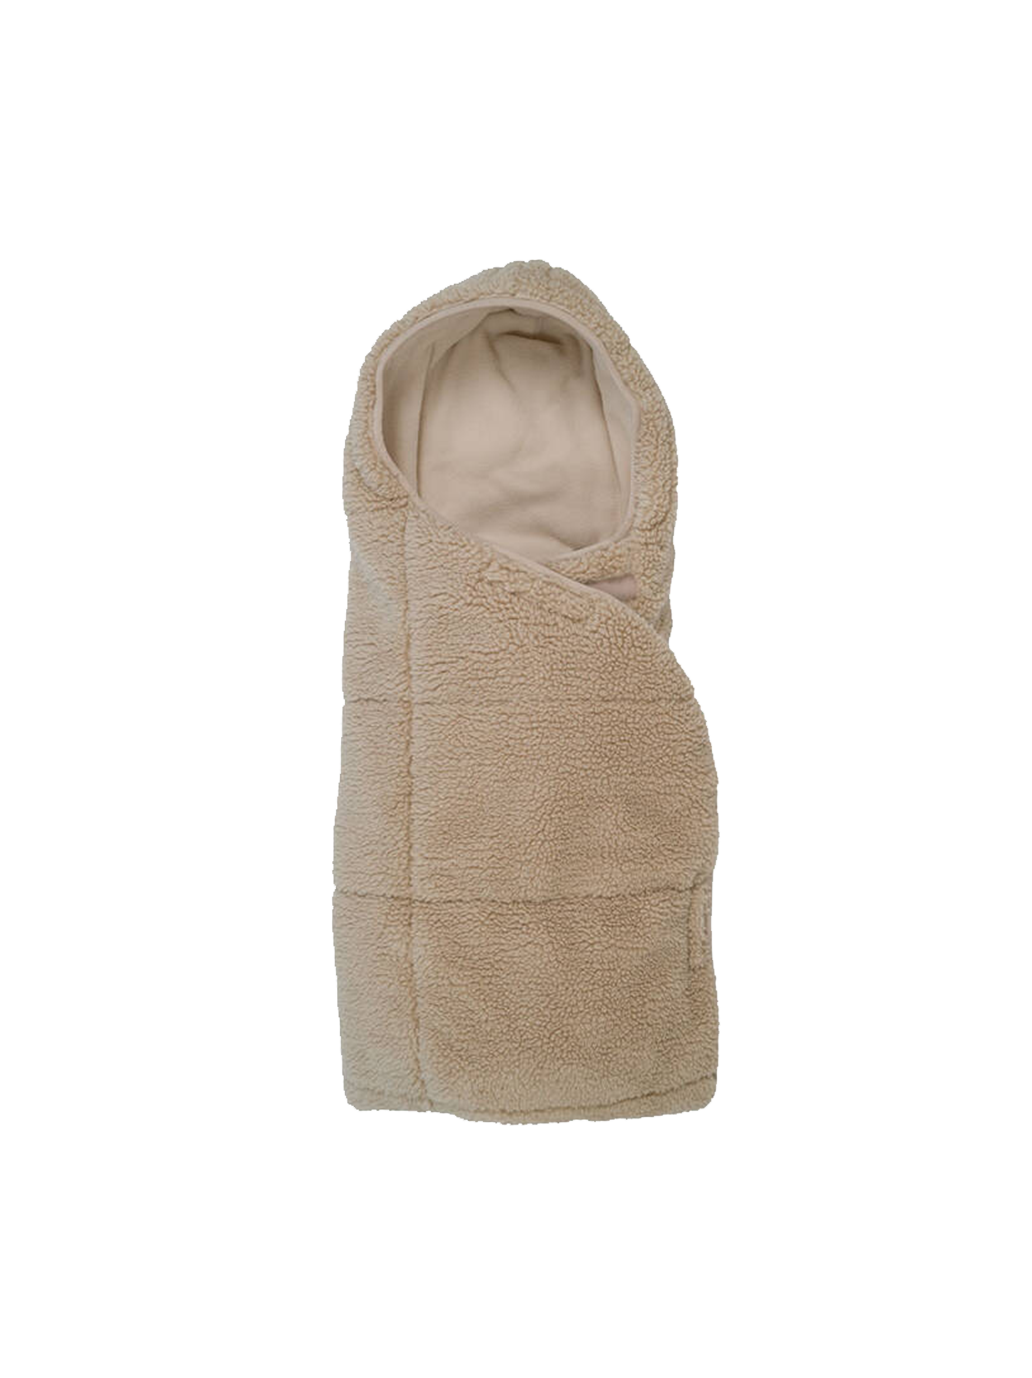 Multifunctional Teddy fleece sleeping bag cover